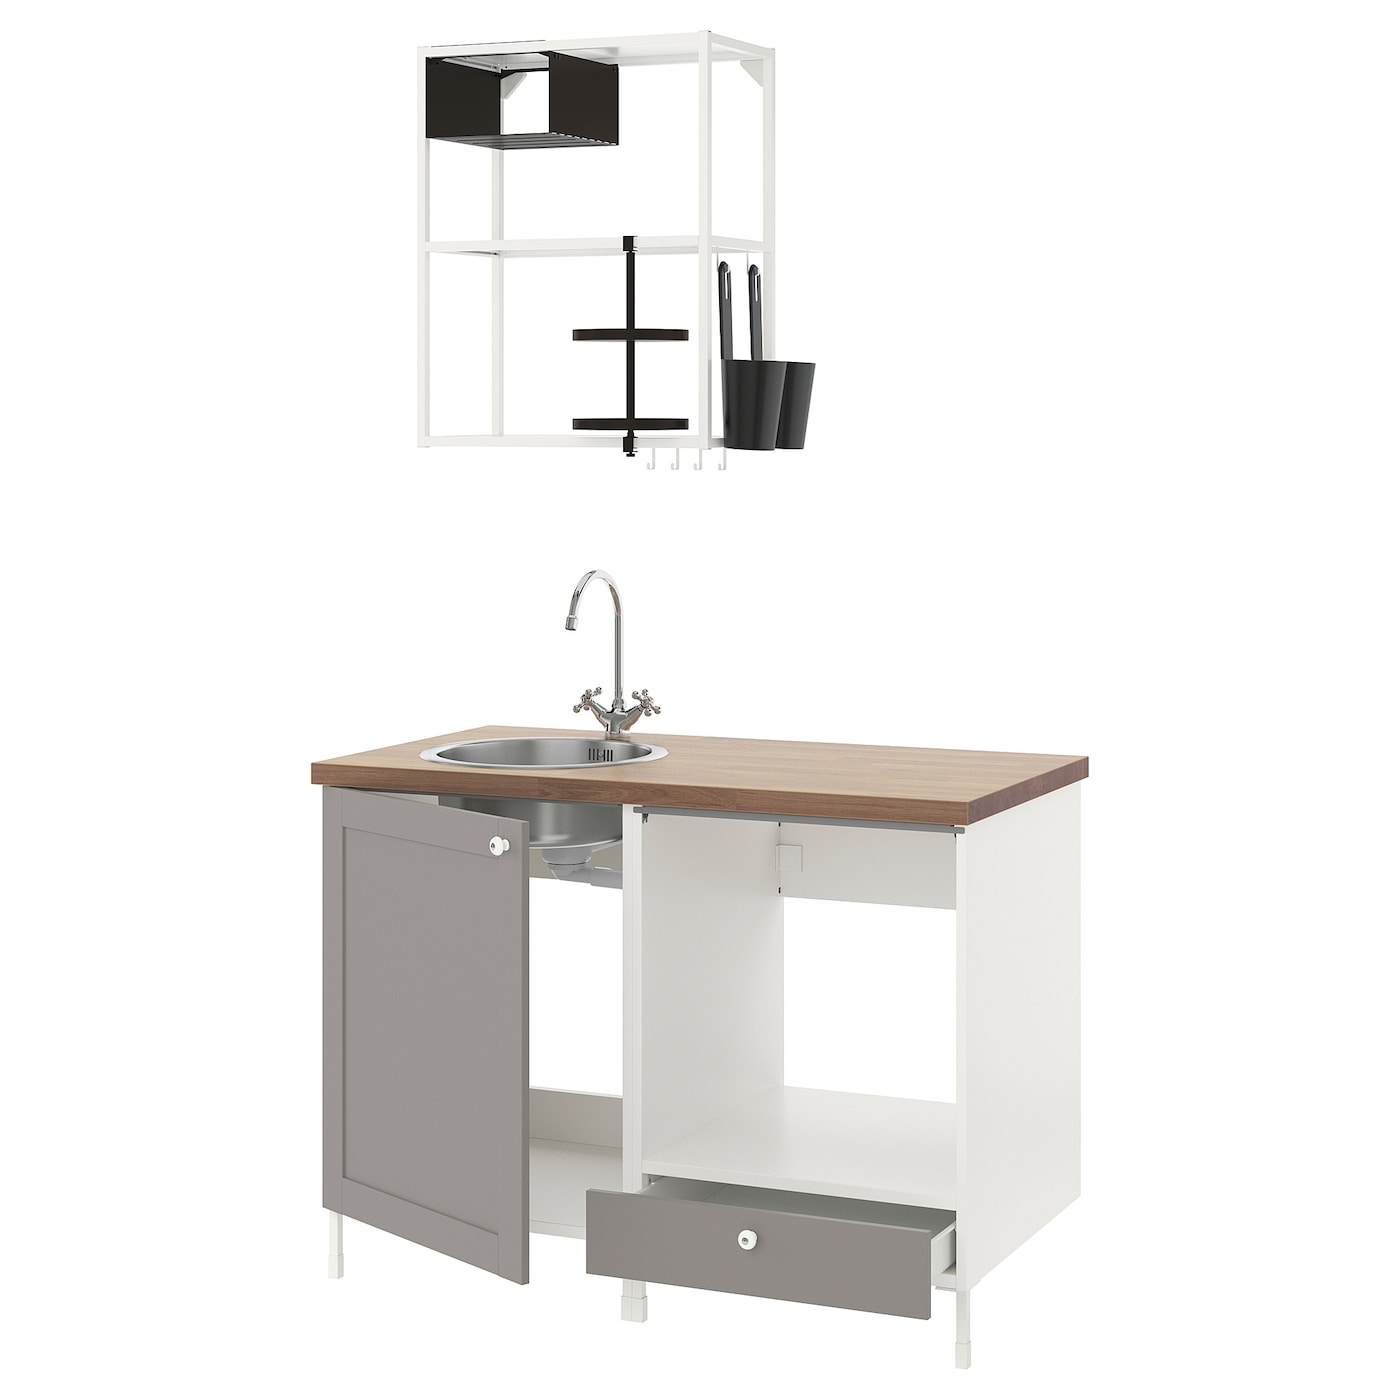 Комбинация для кухонного хранения  - ENHET  IKEA/ ЭНХЕТ ИКЕА, 123x63,5x222 см, белый/серый/бежевый